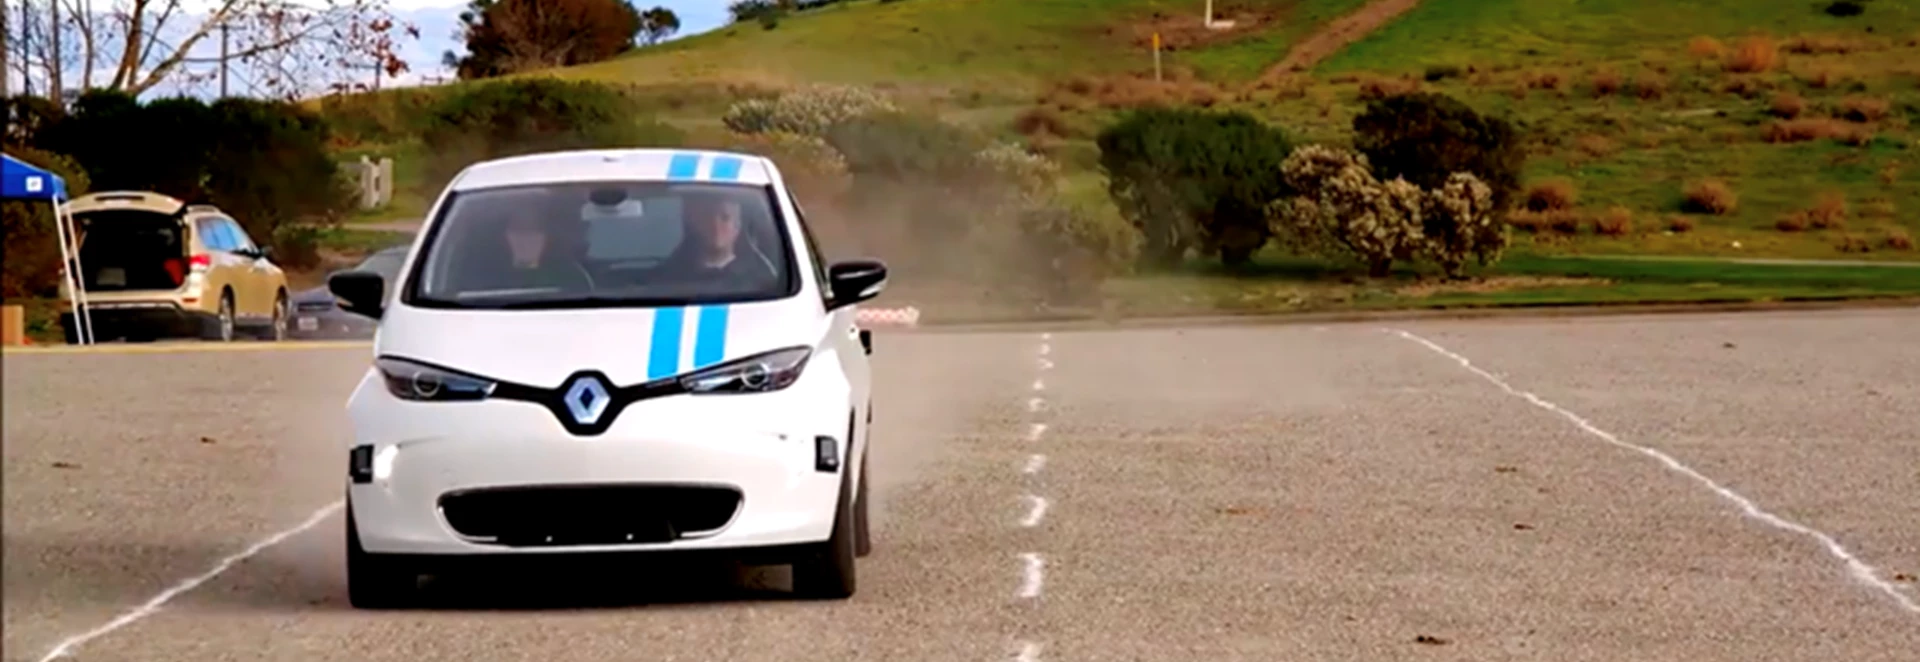 Renault unveils obstacle-avoiding autonomous system 